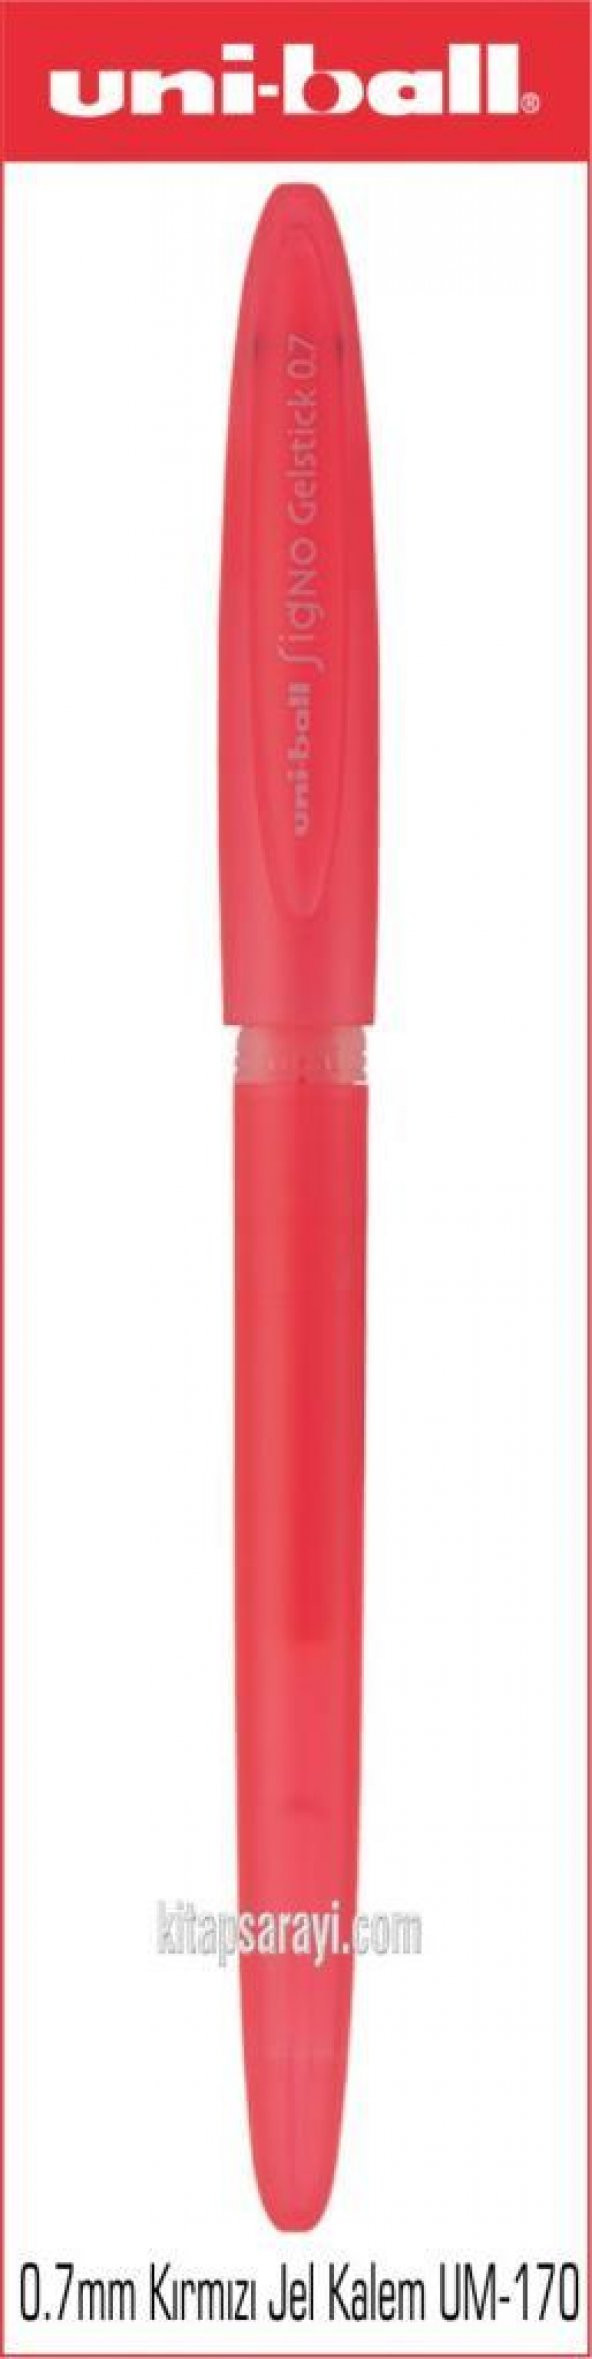 Uniball Signo GELSTICK 0.7 mm Kırmızı Jel Kalem UM-170